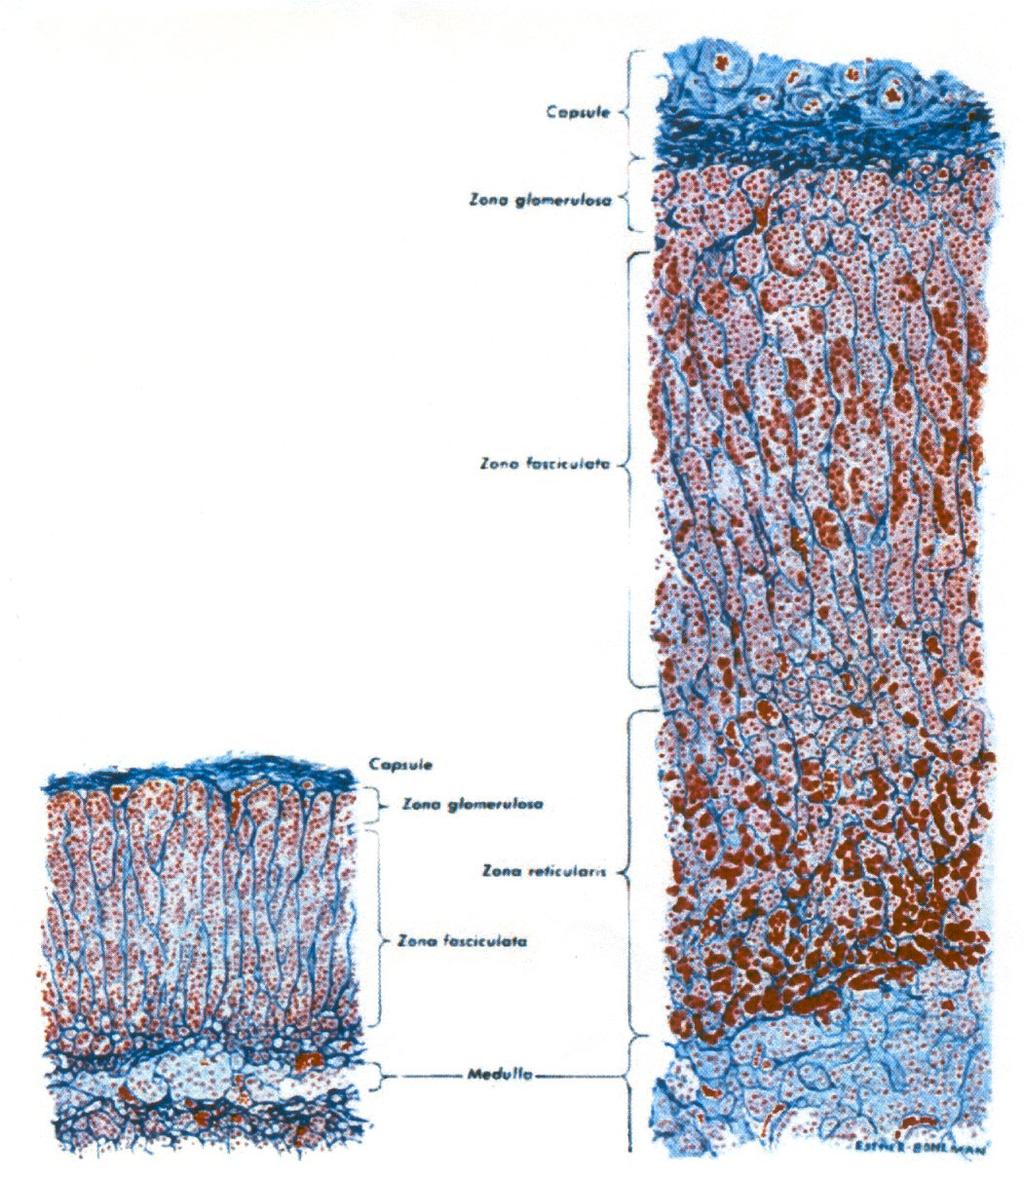 Abbildung 4: Mikroskopischer Aufbau der Nebenniere. Schnitte durch die Nebenniere eines 6-monatigen Säuglings (links) und eines männlichen Erwachsenen (rechts, vgl. Abb. 5).